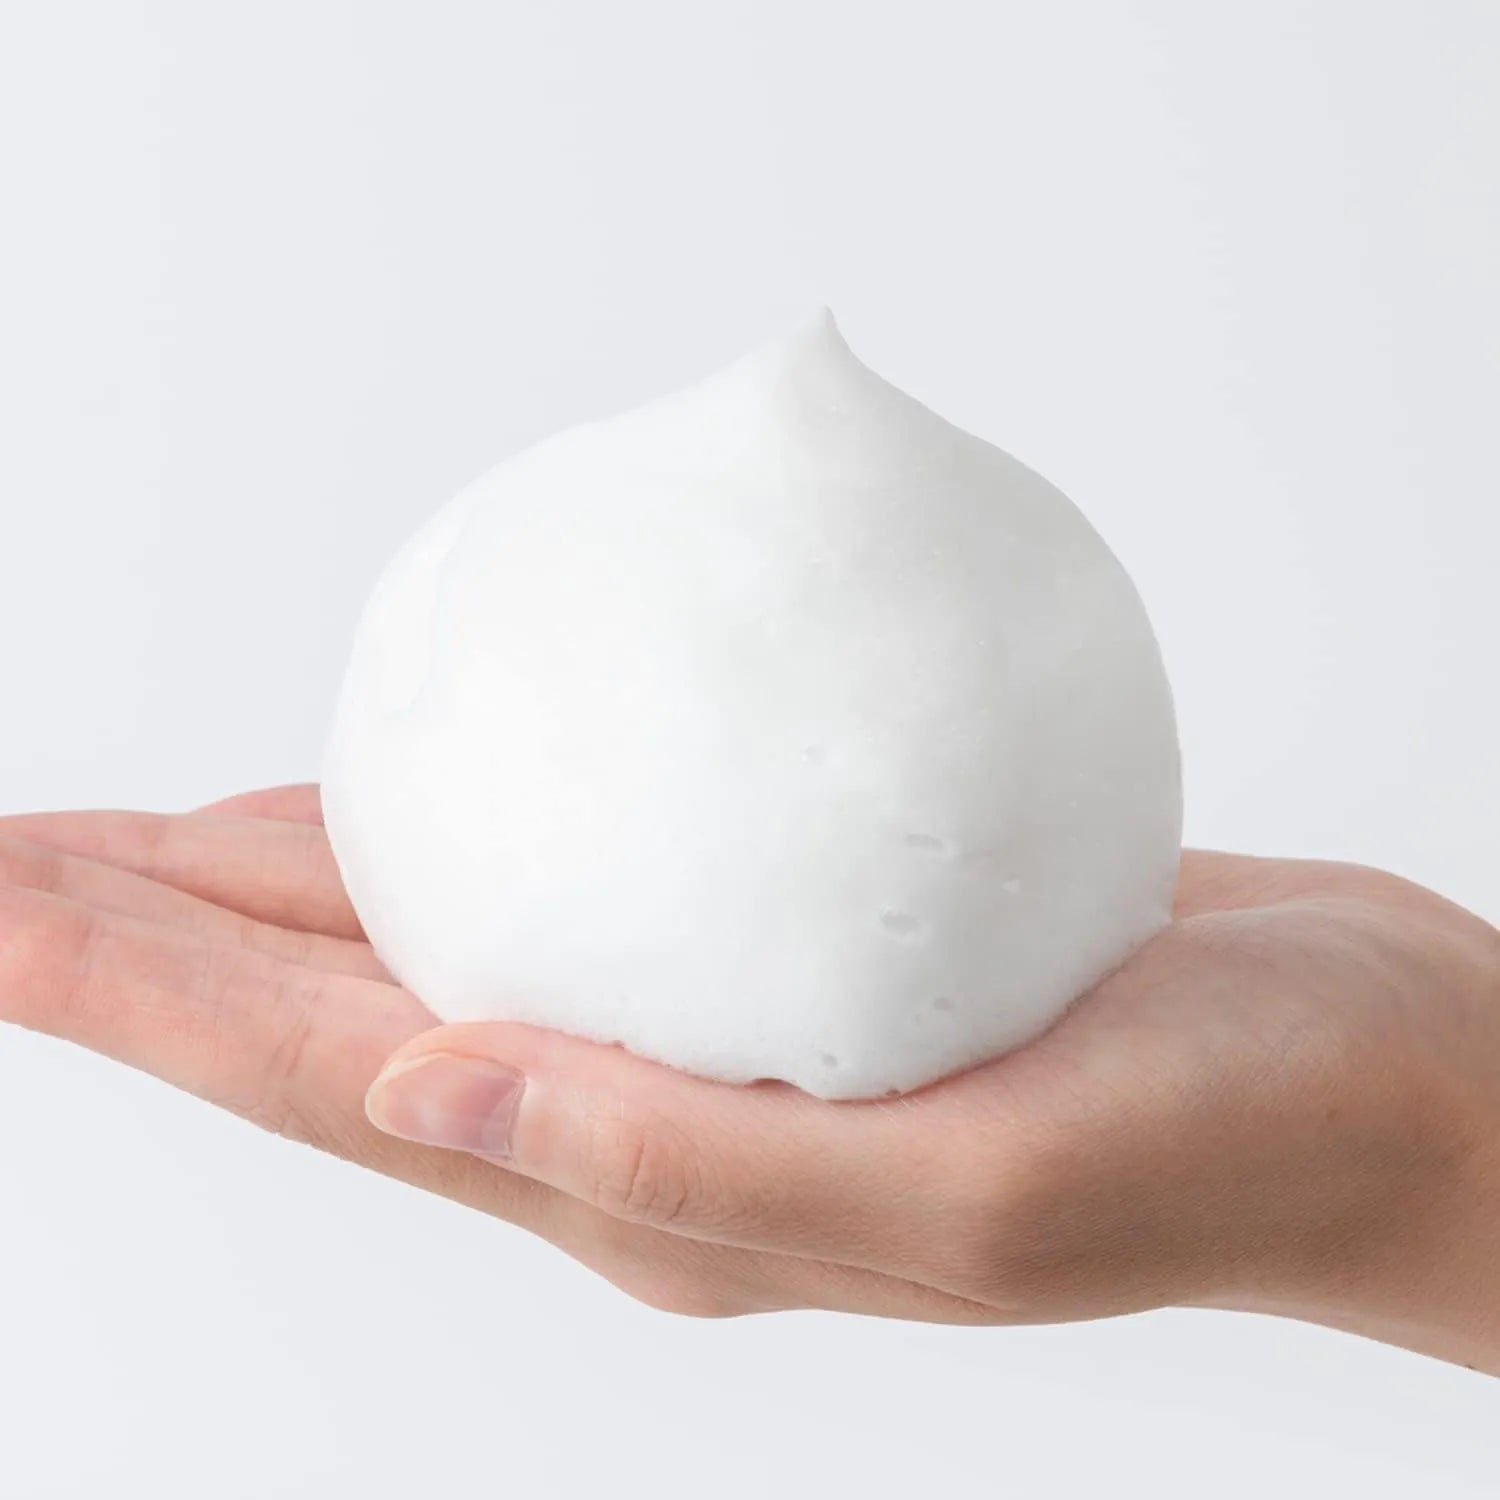 Kose Softymo W Ceramides Face Washing Foam 150g/190g - Buy Me Japan